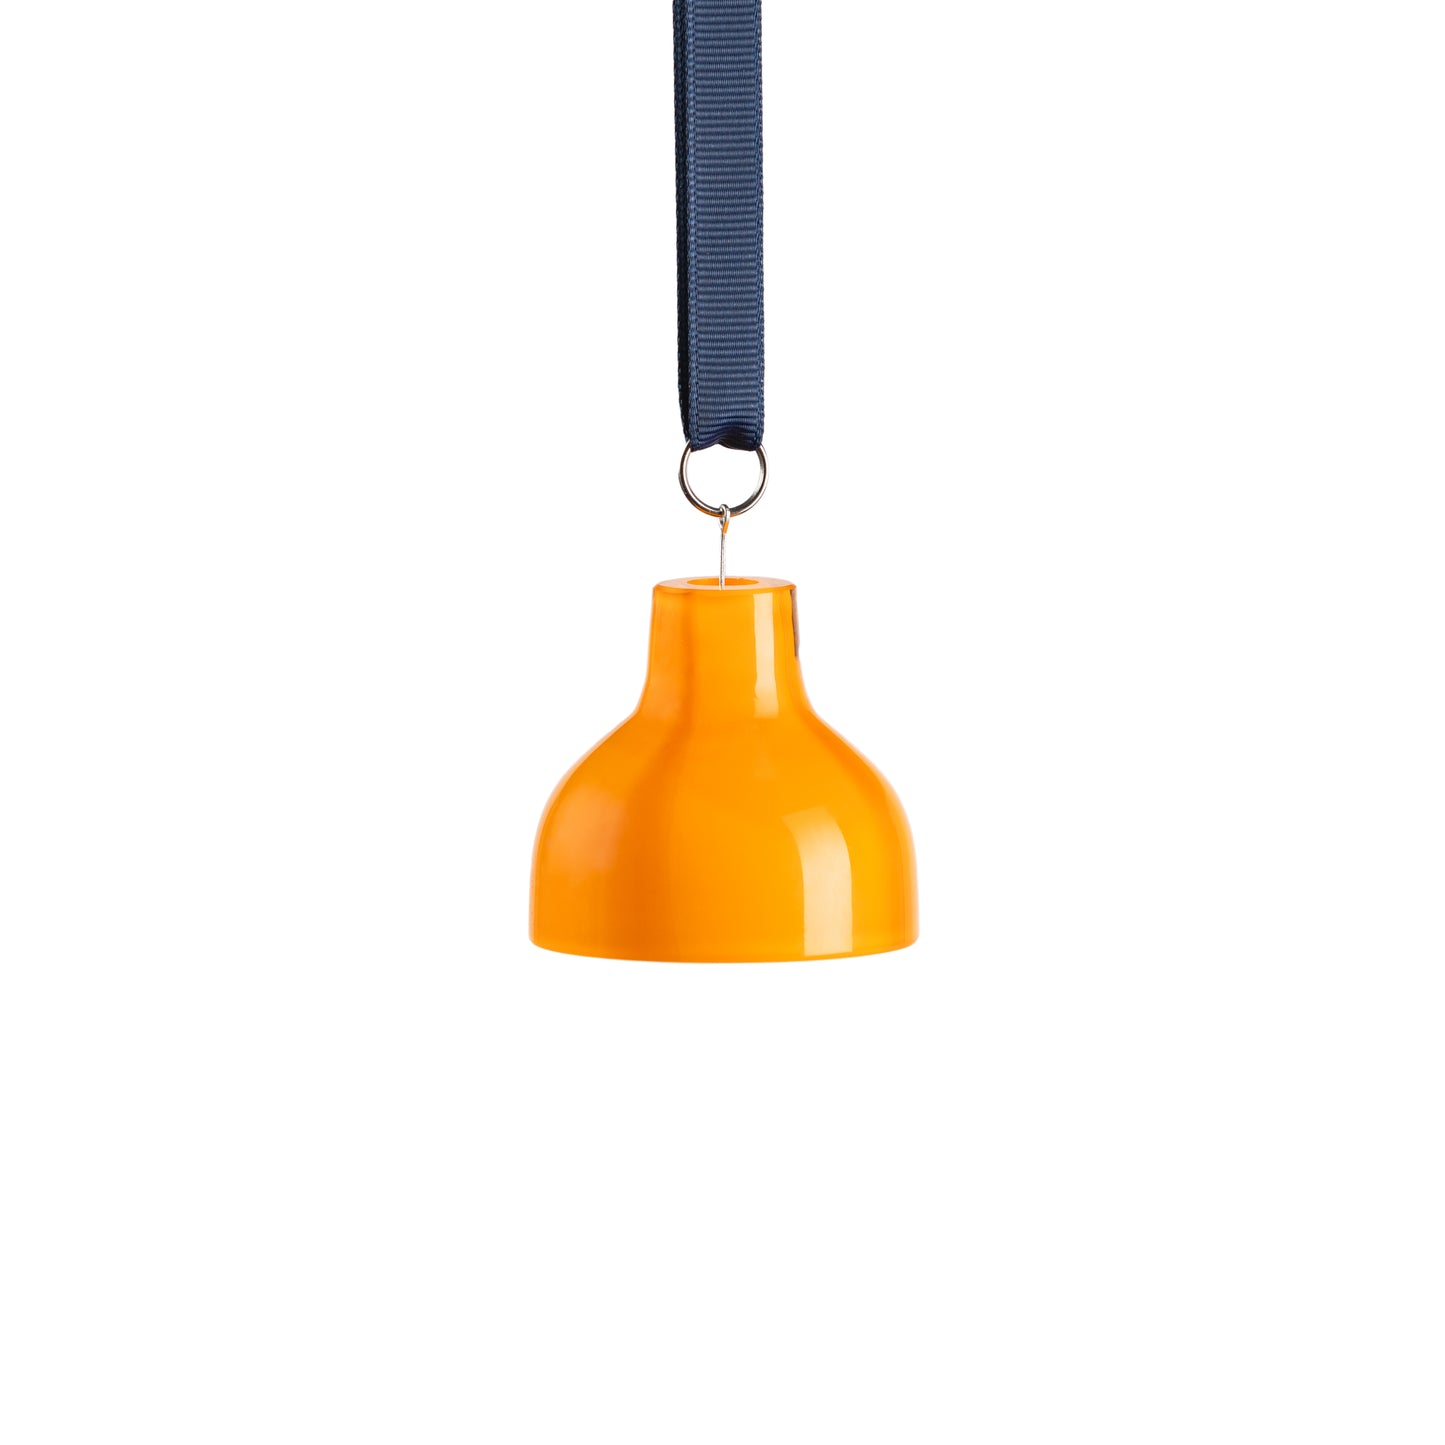 Kodanska Flow Bell Bell Orange W. Dots